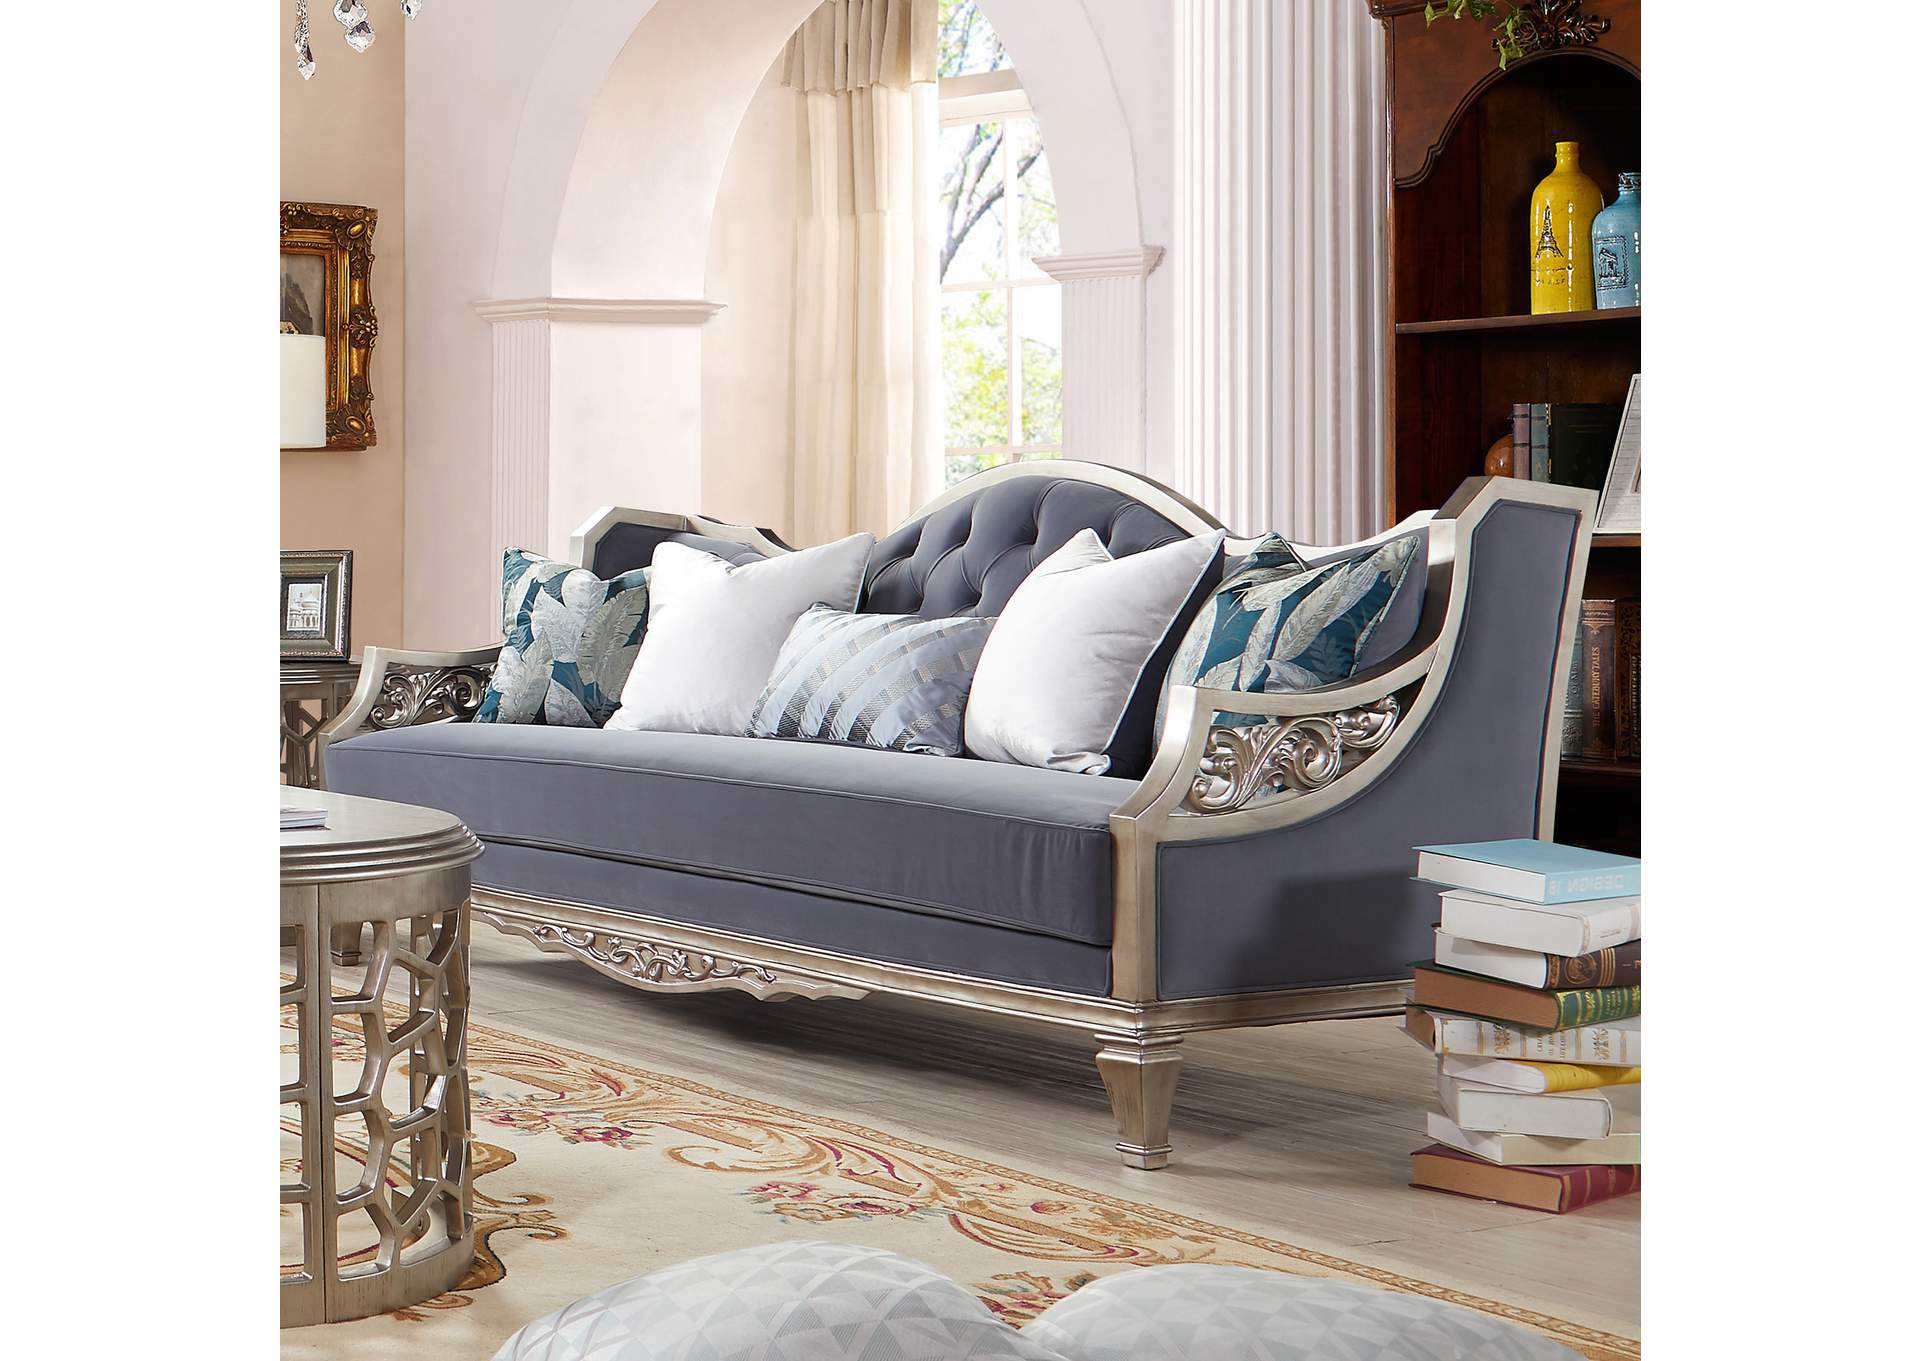 Silver 3 Piece Sofa Set,Homey Design